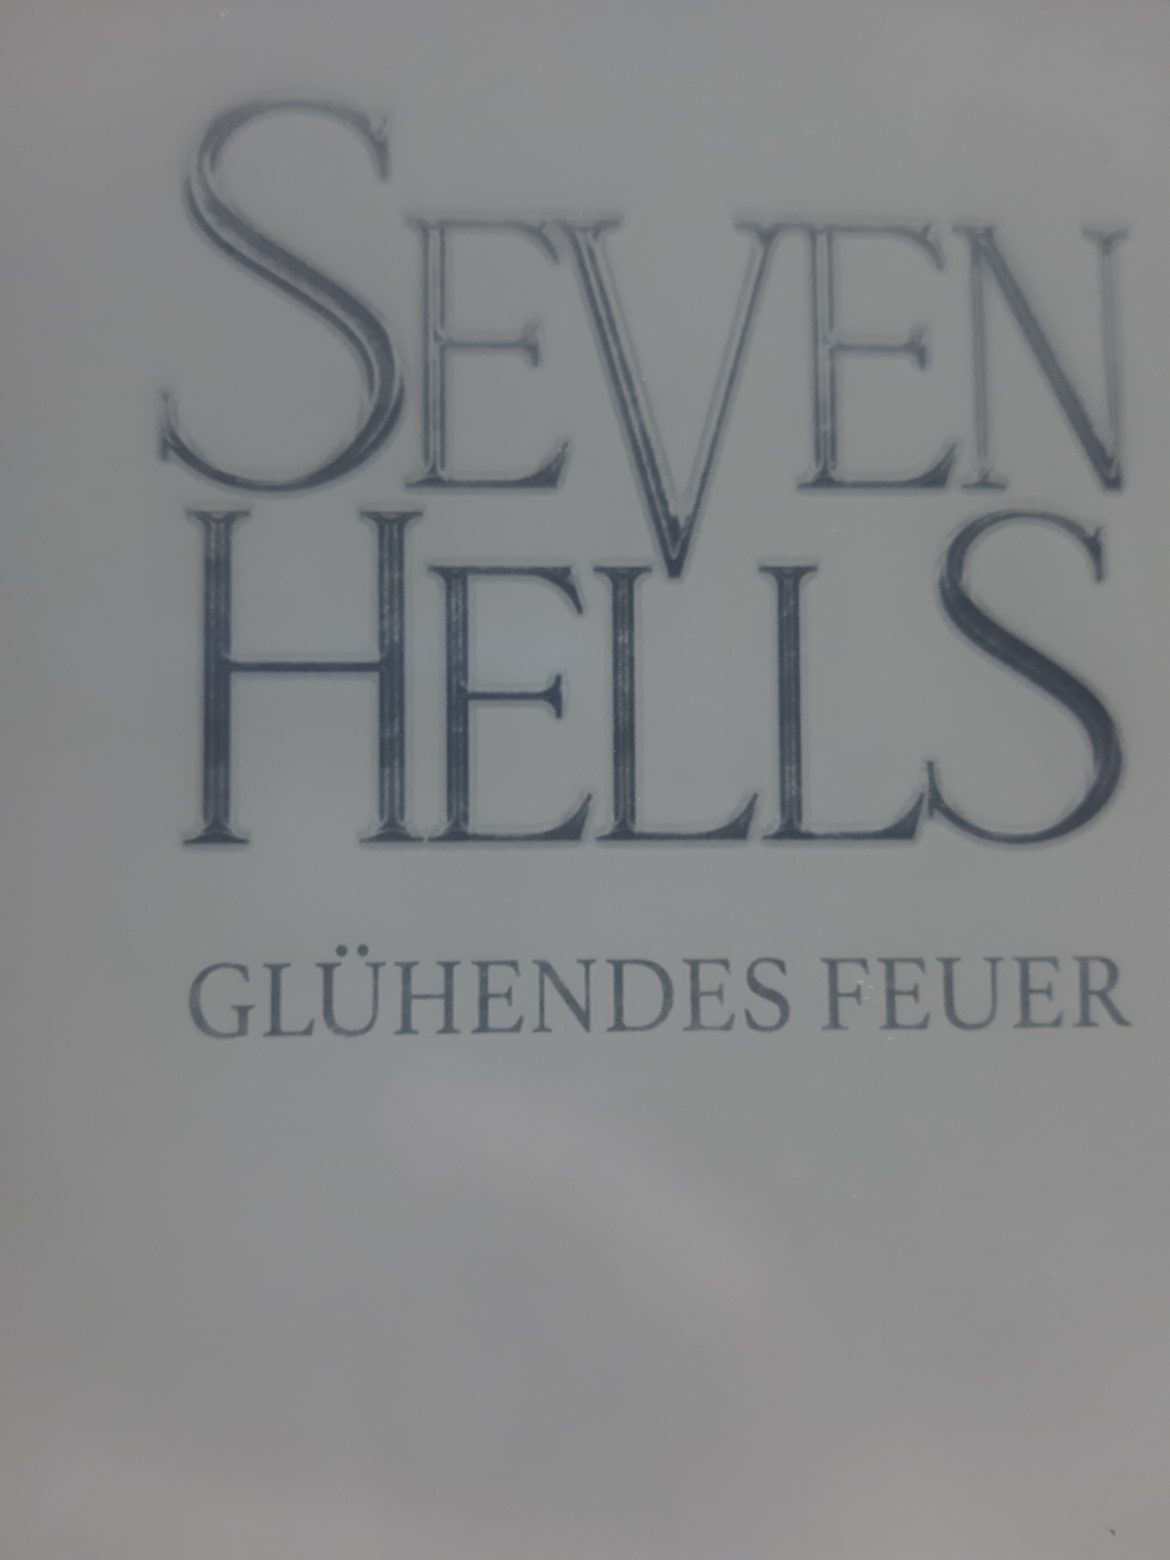 Seven Hells- Glühendes Feuer